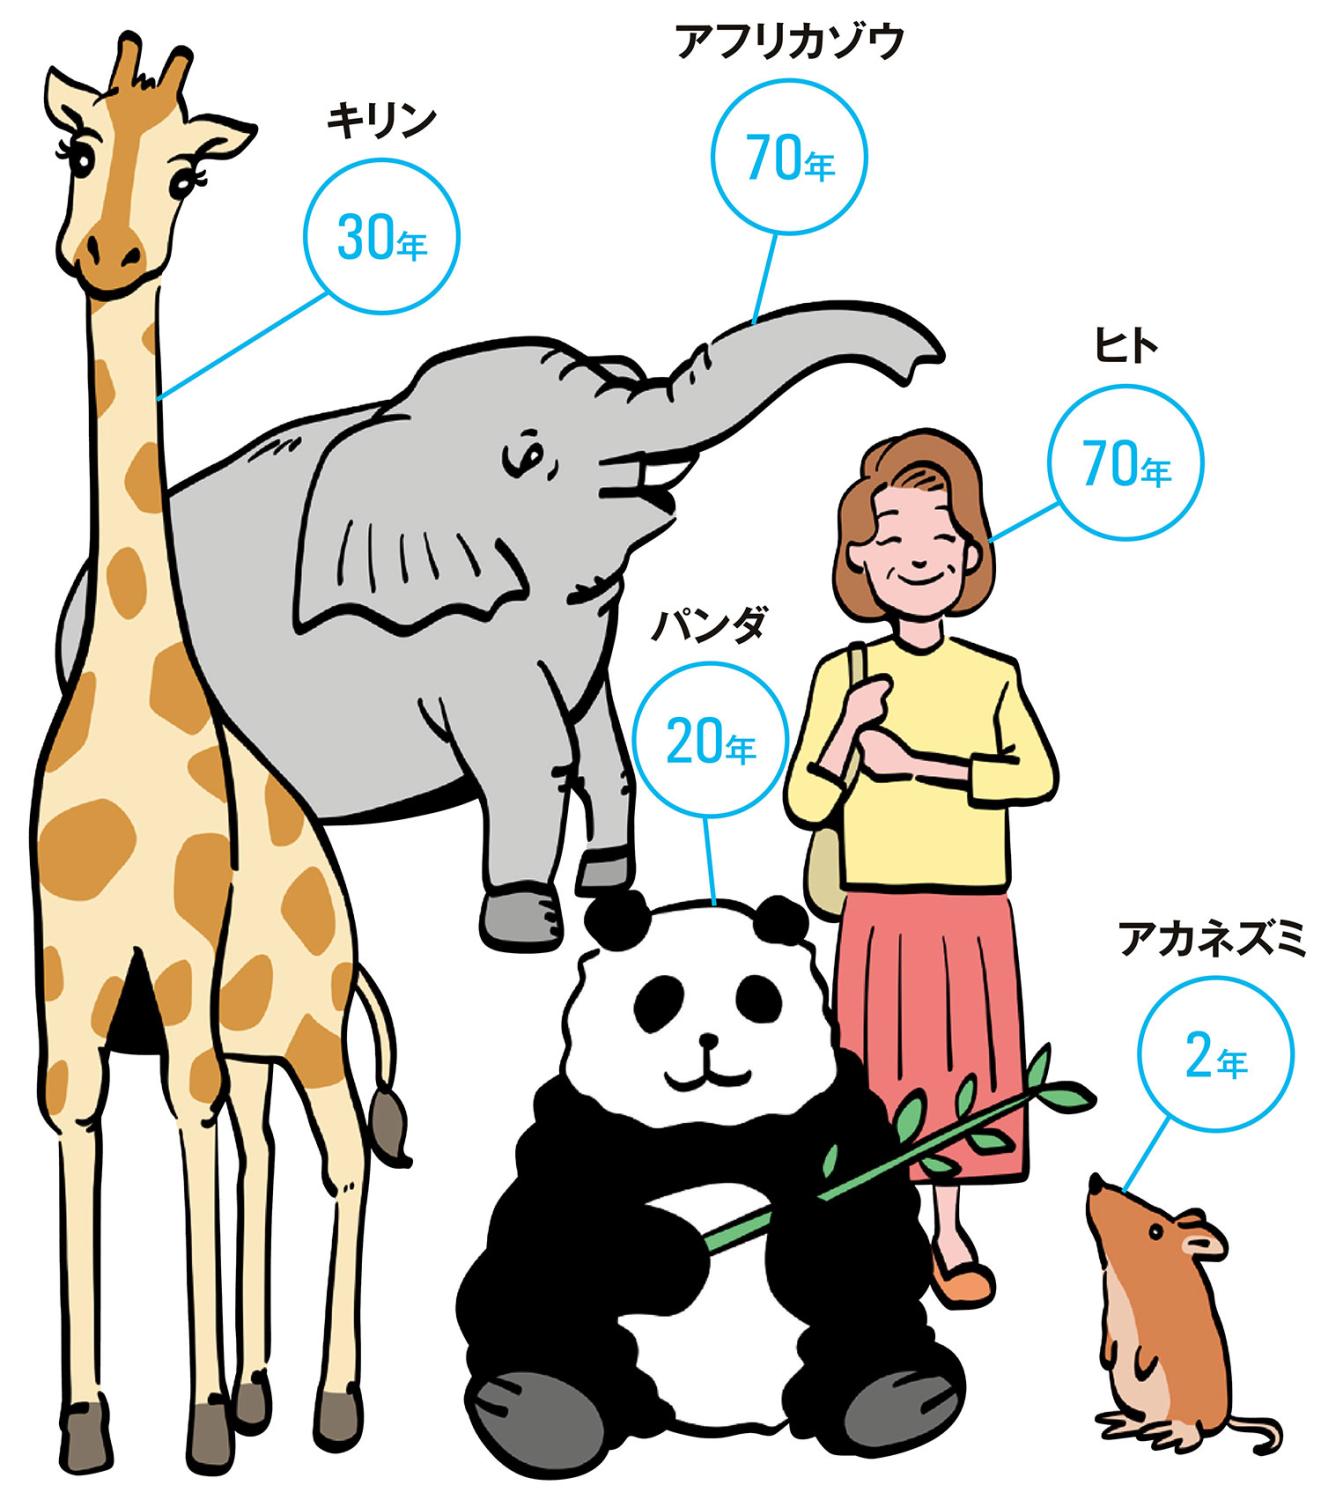 動物寿命　アフリカゾウ 70年　ヒト 70年　キリン 30年　パンダ 20年　アカネズミ 2年